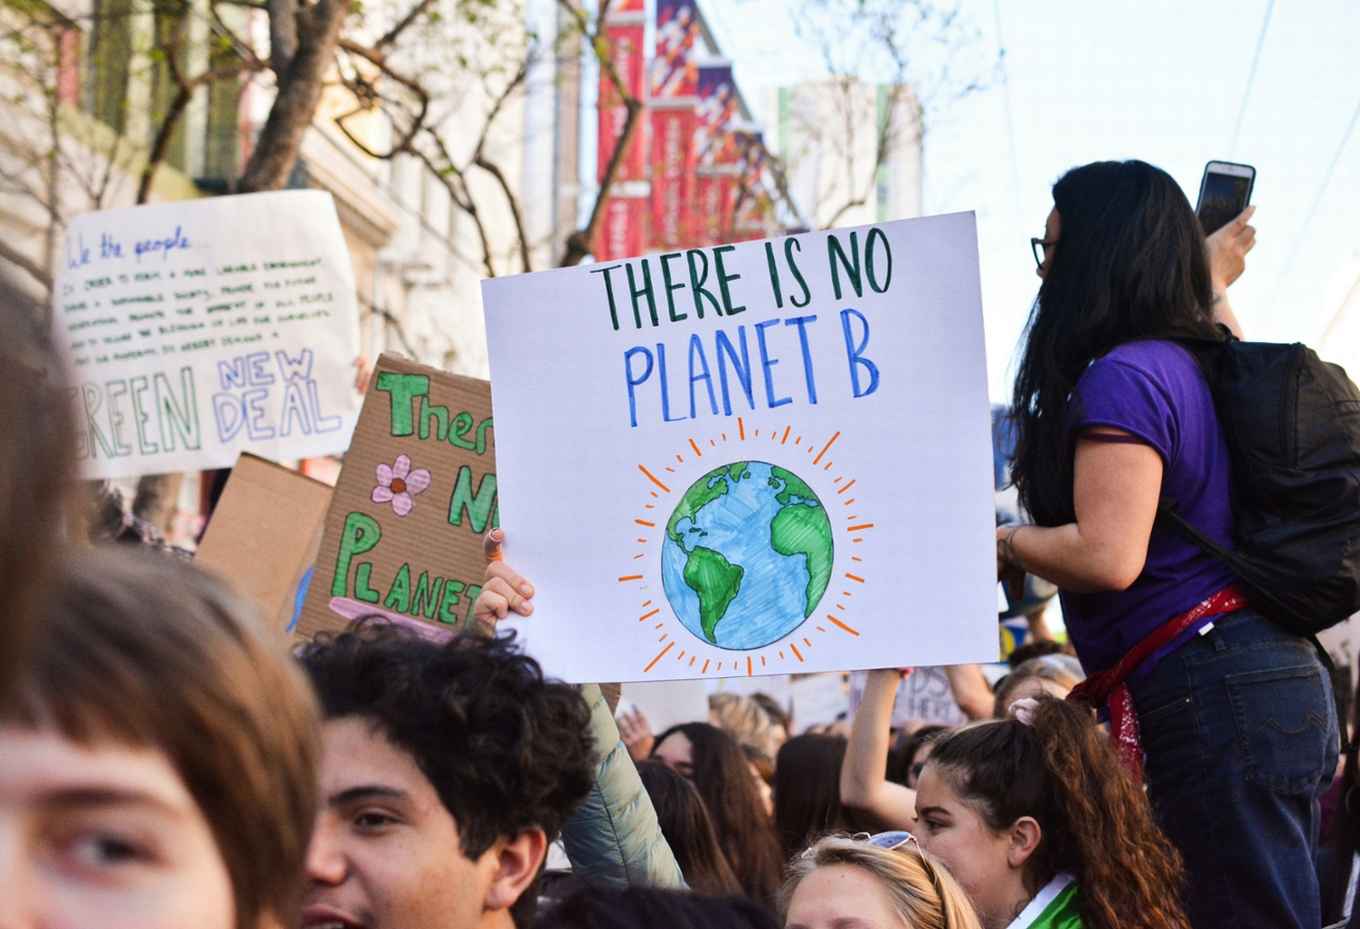 Klimaatactivisten die deelnemen aan een protest.